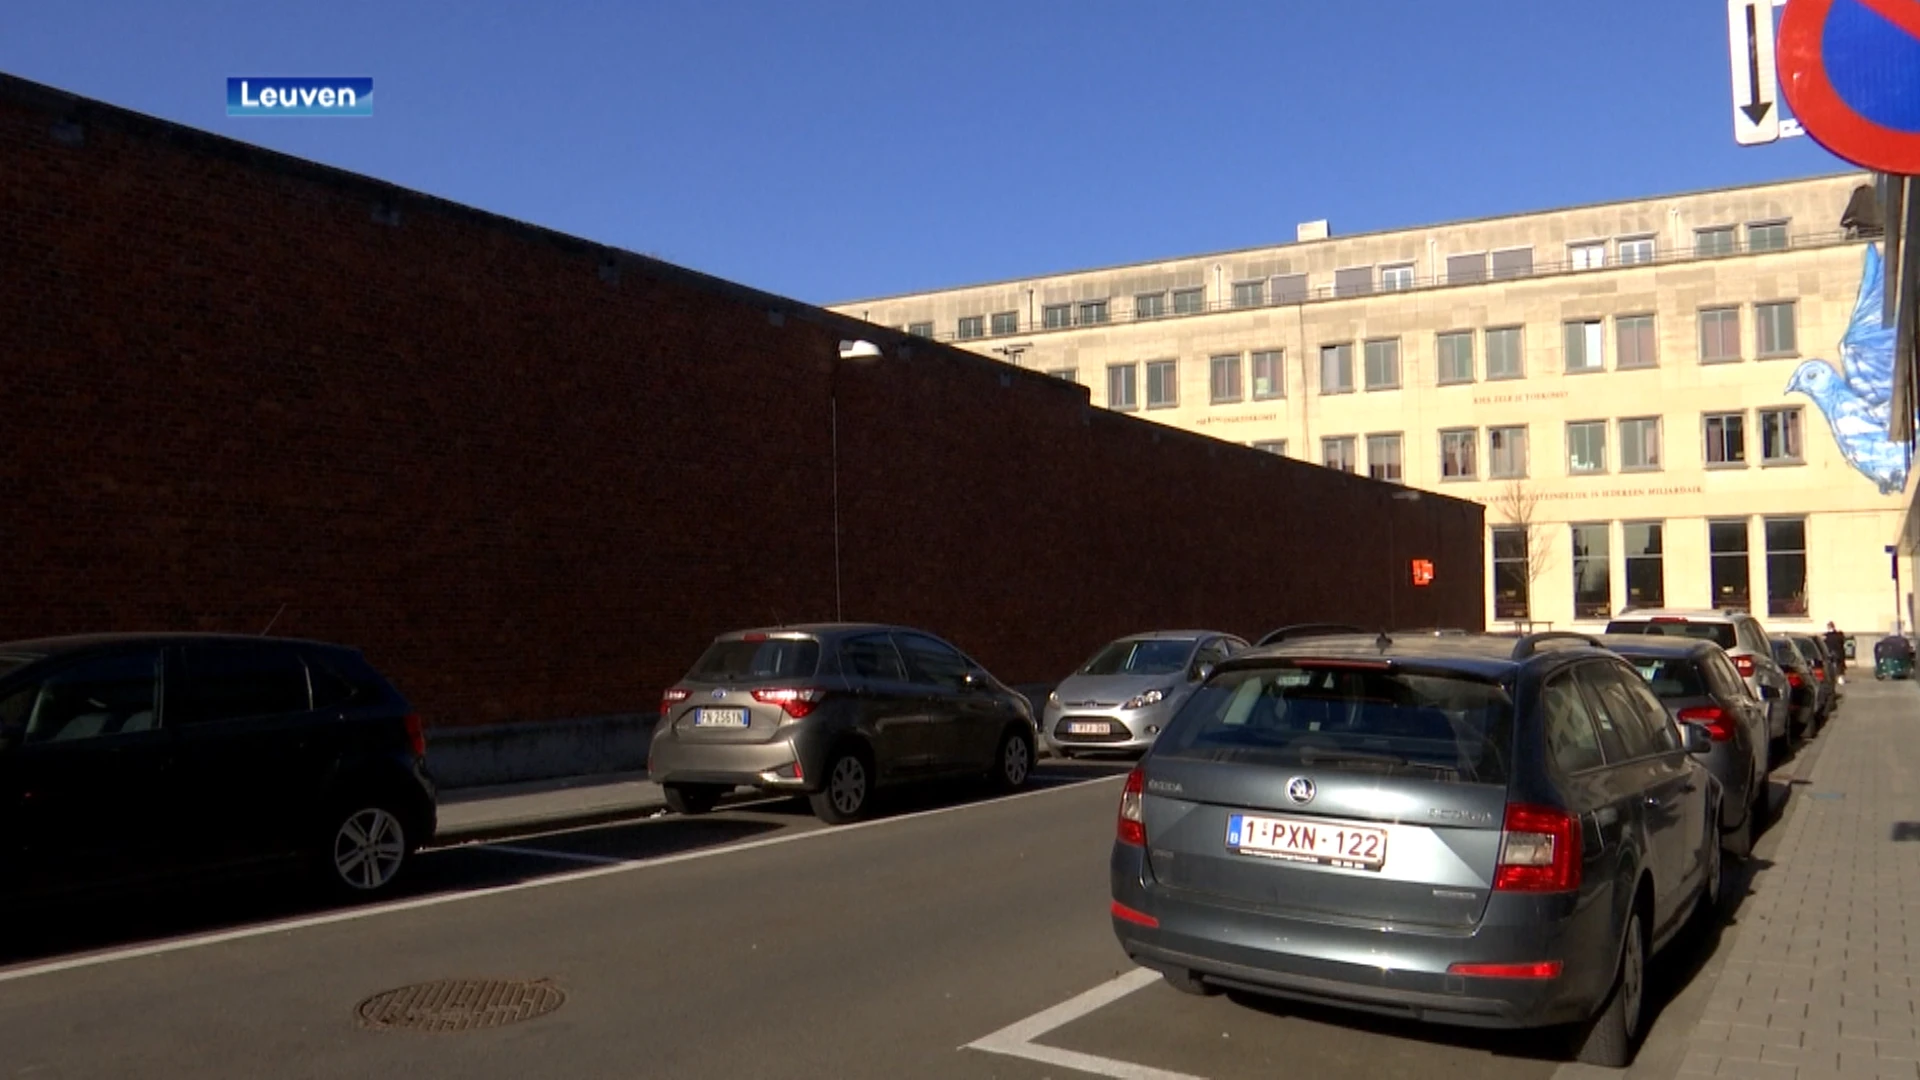 Meer pakjes met gsm's, drugs en messen over muur van hulpgevangenis Leuven gegooid